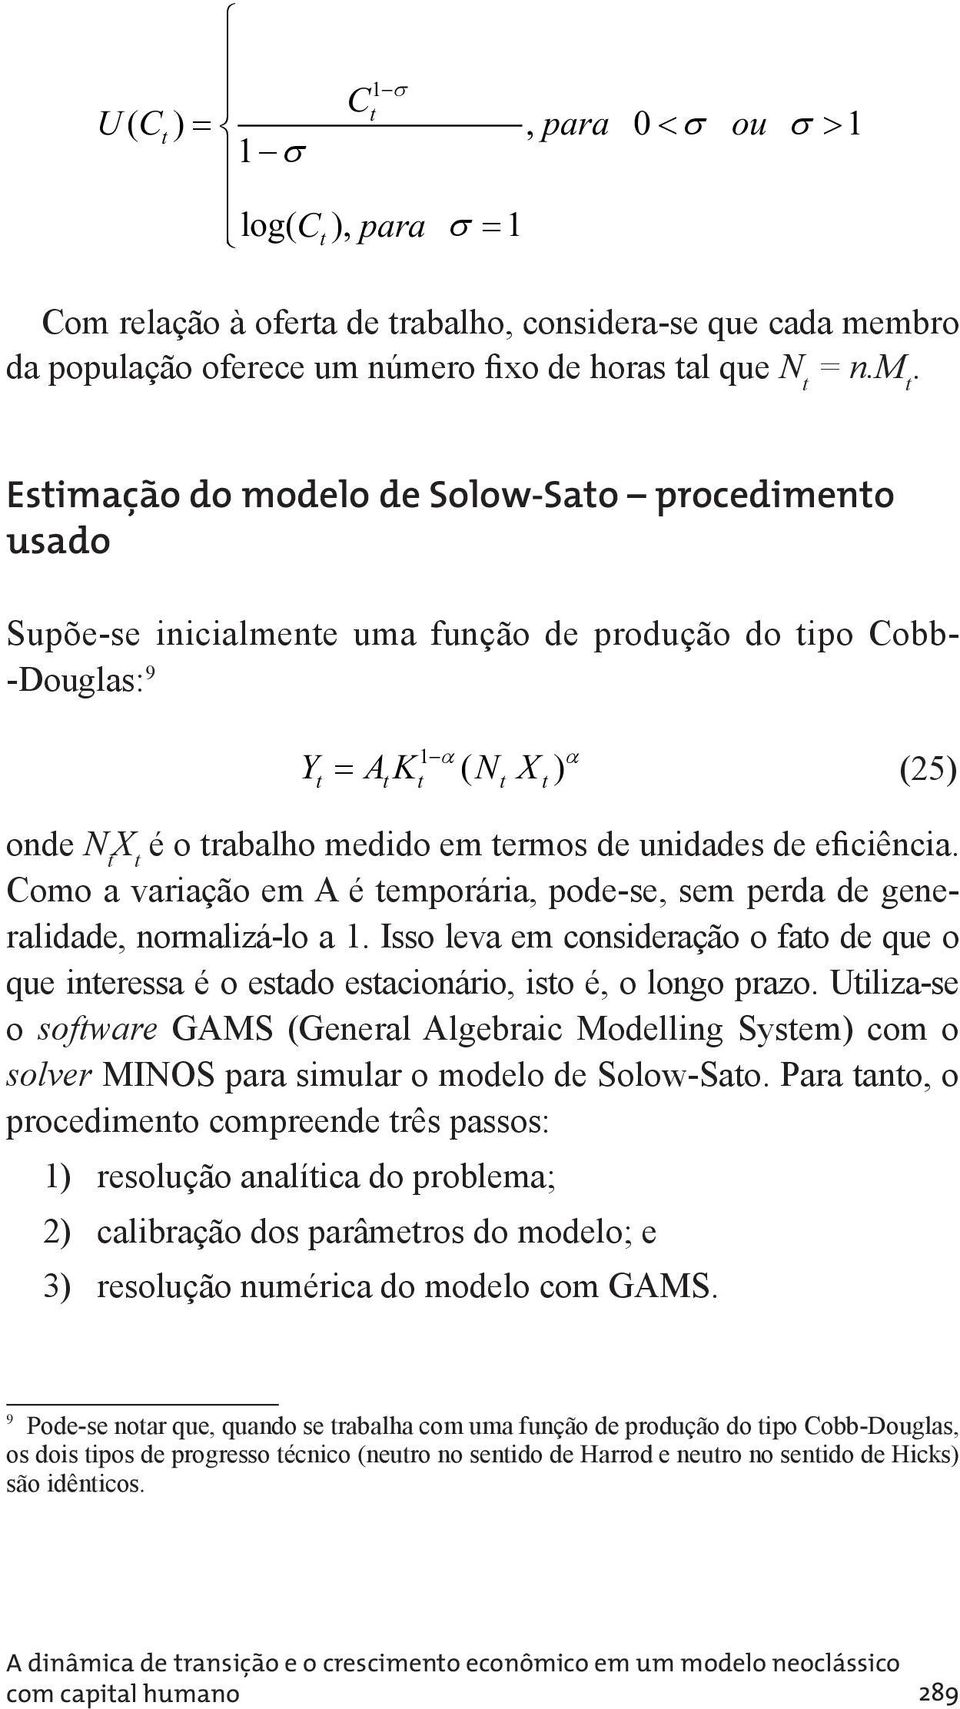 mbro da população oferece um número fixo de horas al que N = n.m. Esimação do modelo de Solow-Sao procedimeno usado Supõe-se inicialmene uma função de produção do ipo Cobb- -Douglas: 9 Y AK ( N X )